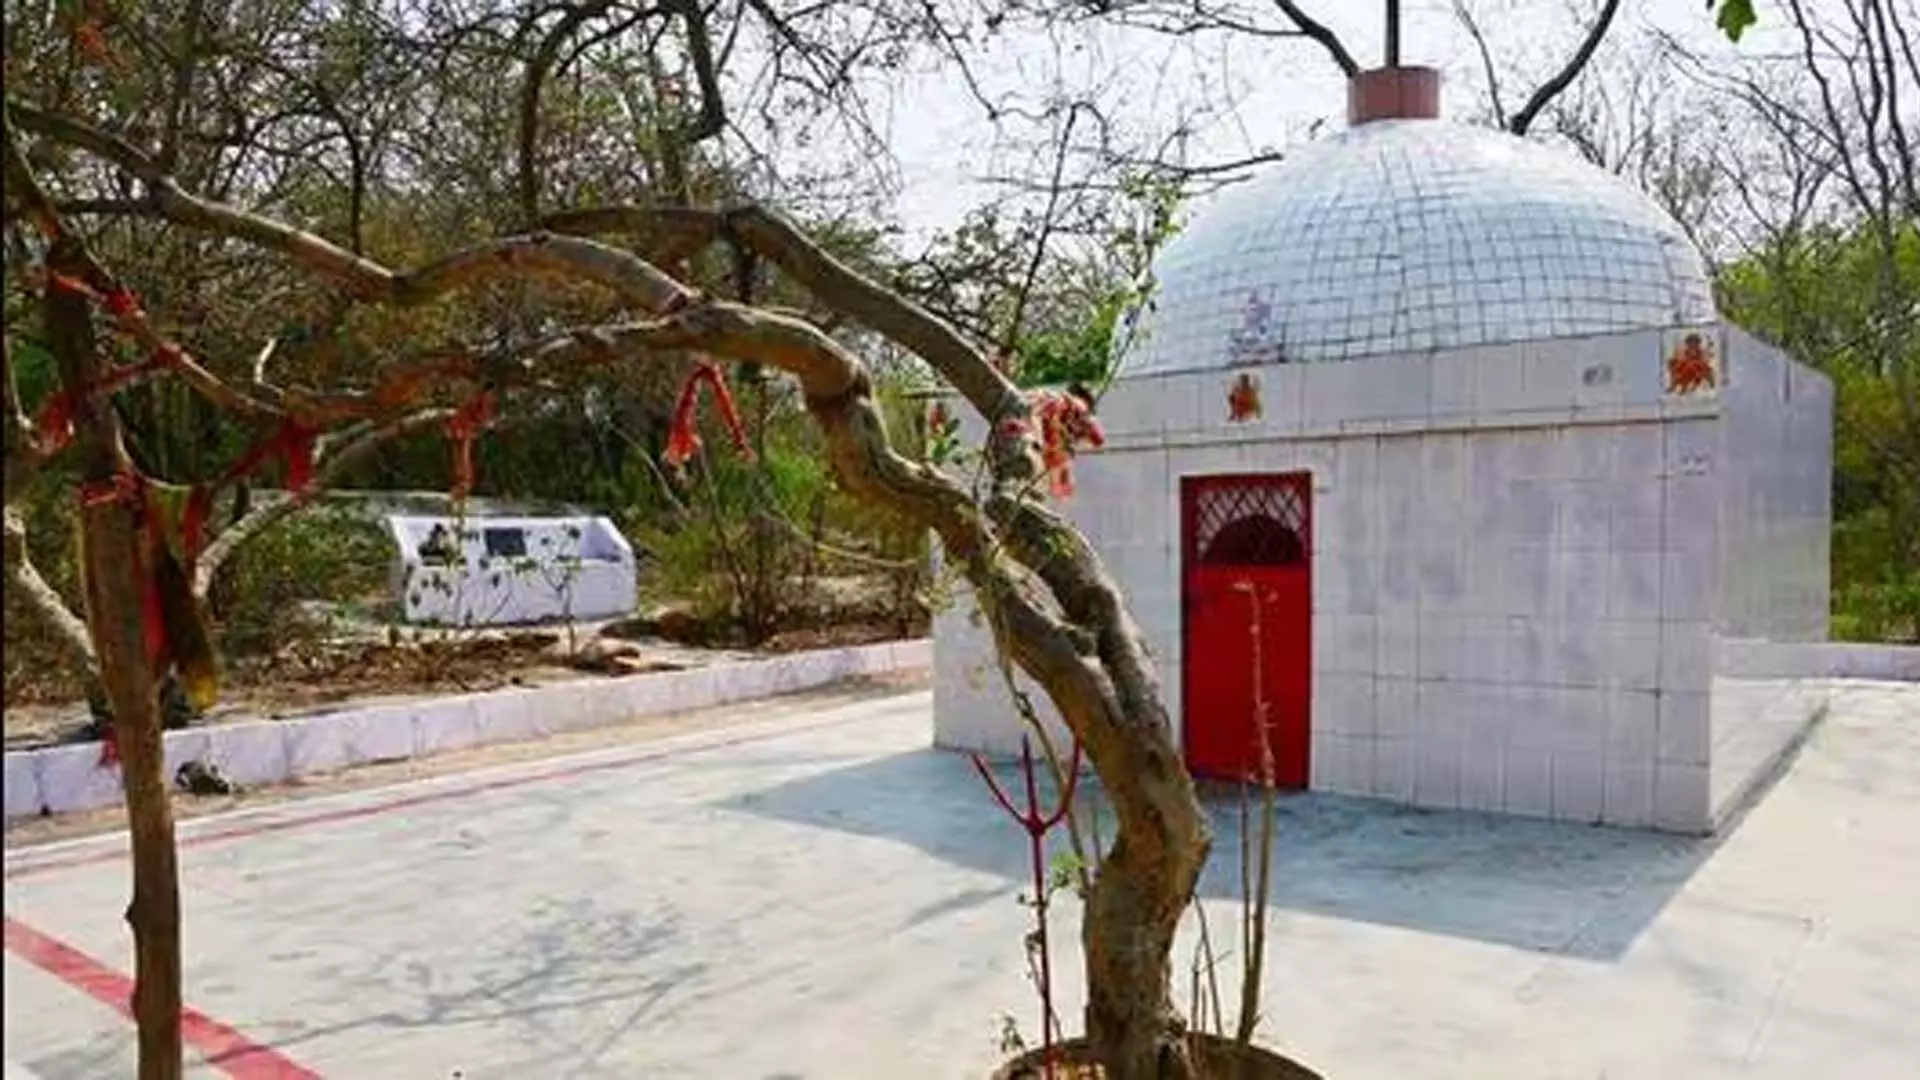 दिल्ली के अरावली बायोडायवर्सिटी पार्क में मंदिर से मूर्तियां चोरी हो गईं